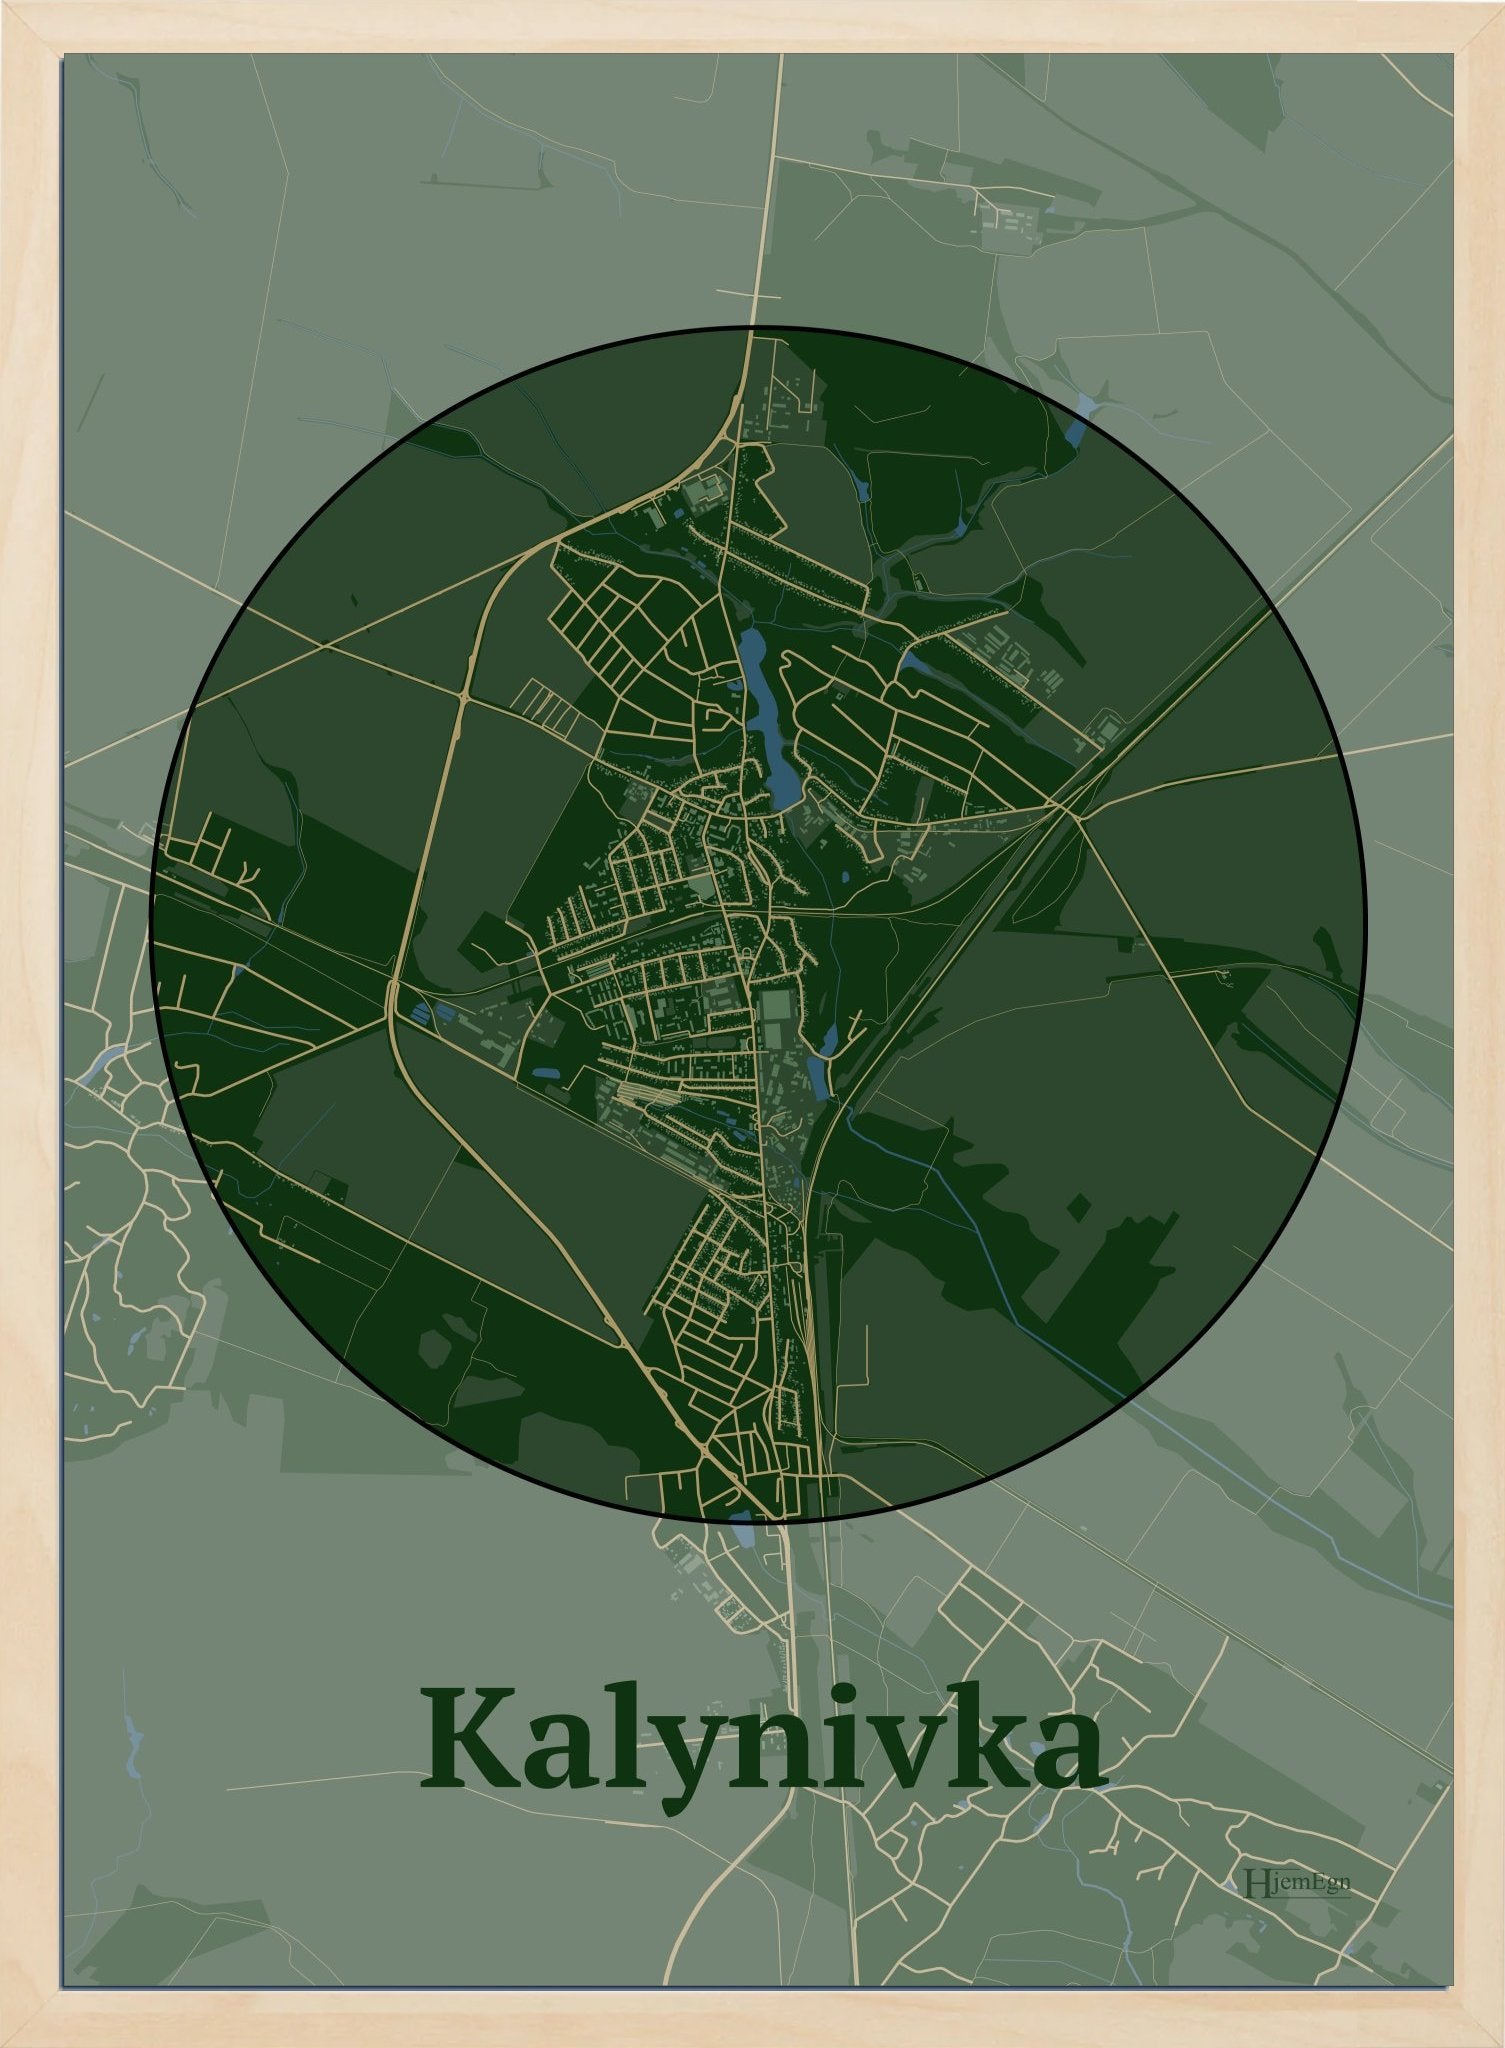 Kalynivka plakat i farve mørk grøn og HjemEgn.dk design centrum. Design bykort for Kalynivka